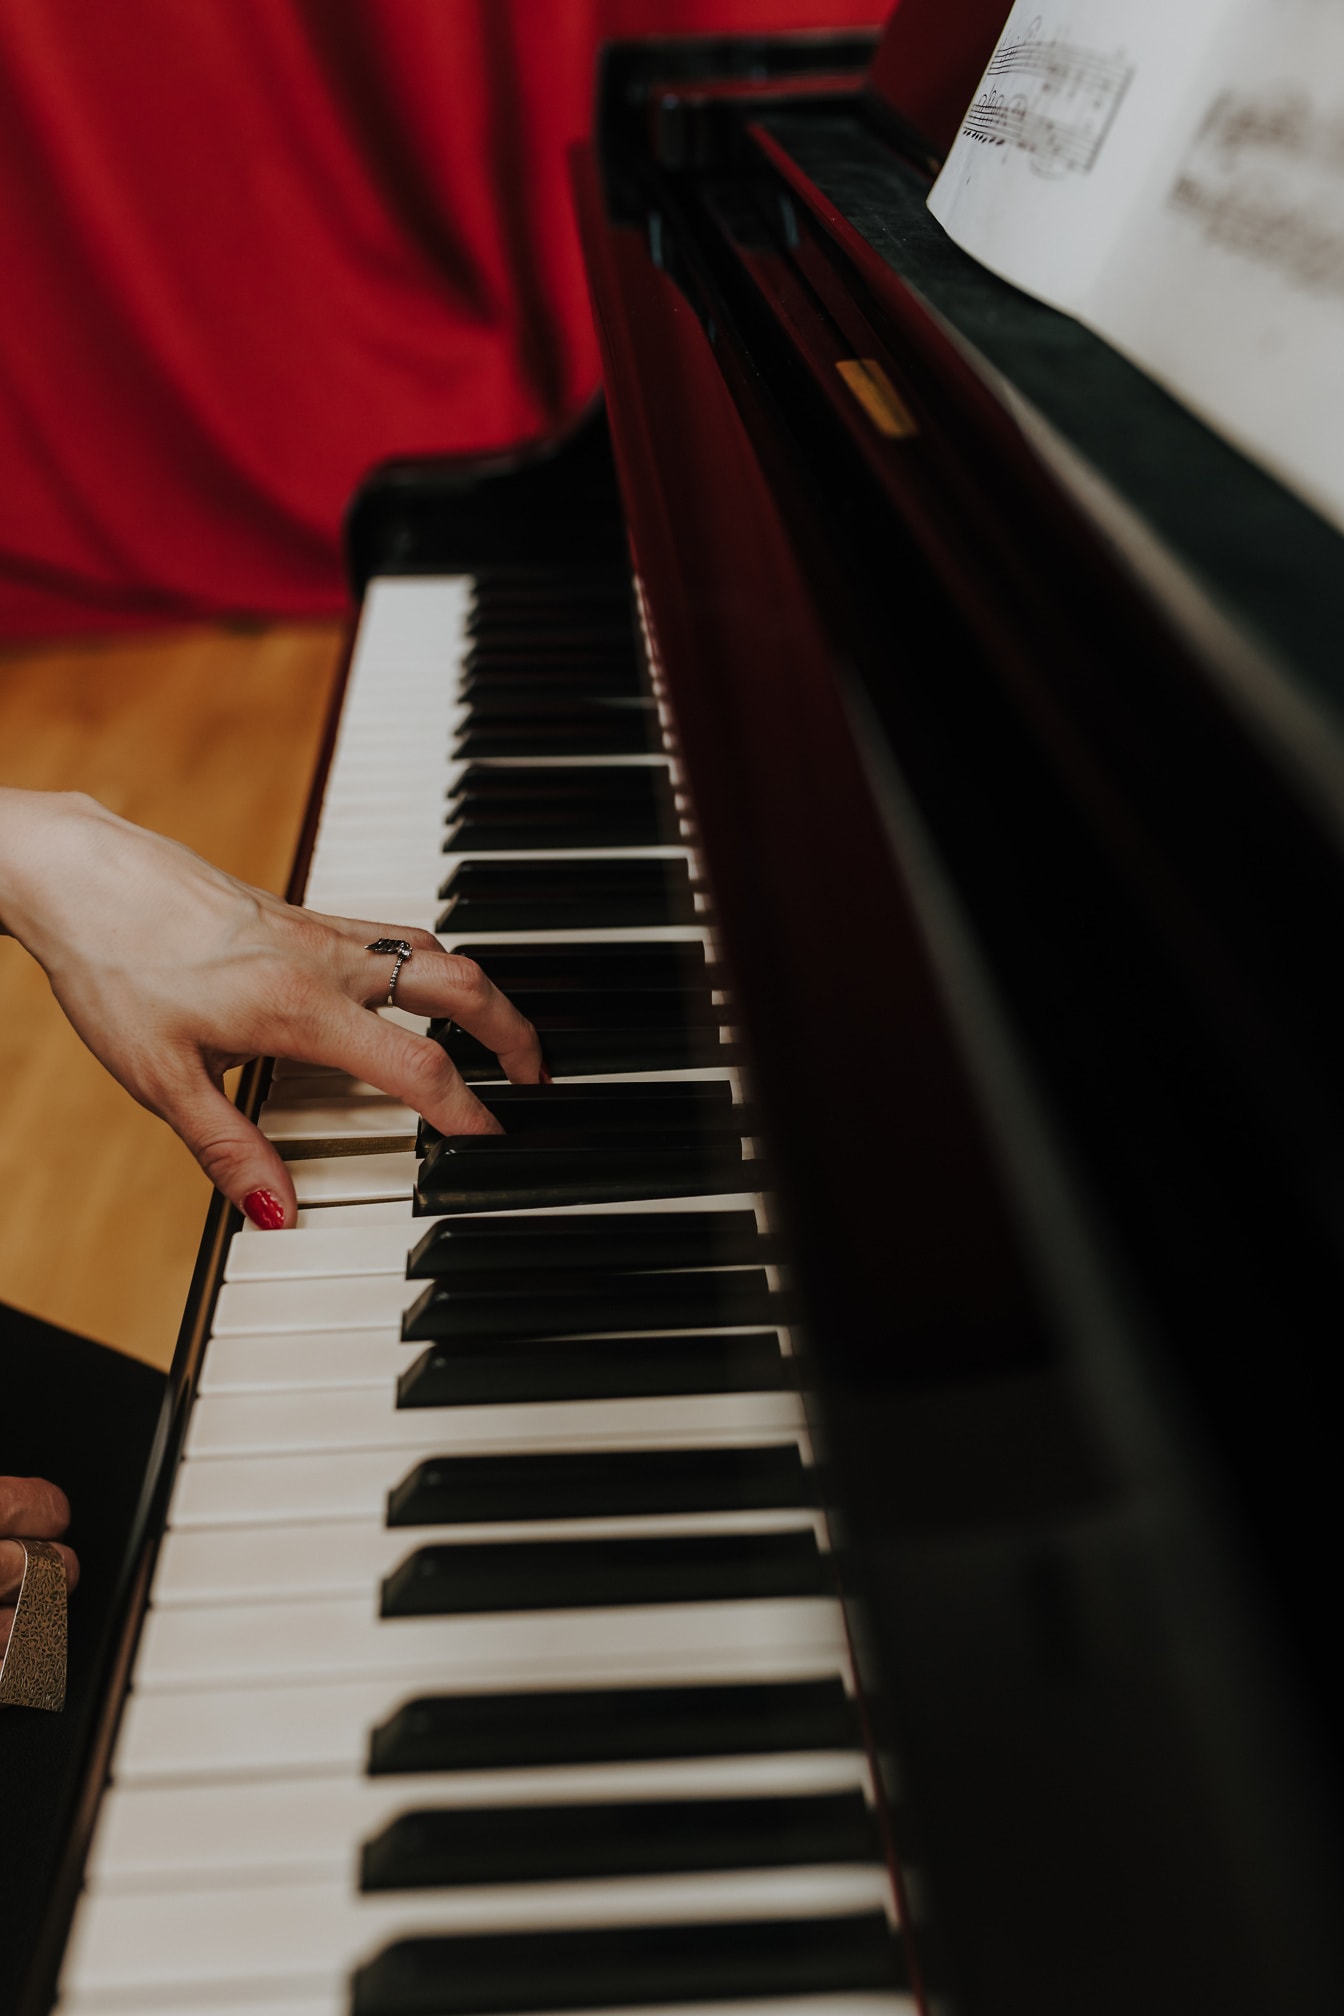 ภาพระยะใกล้ของมือพร้อมแหวนทองและยาทาเล็บสีแดงเล่นเปียโน